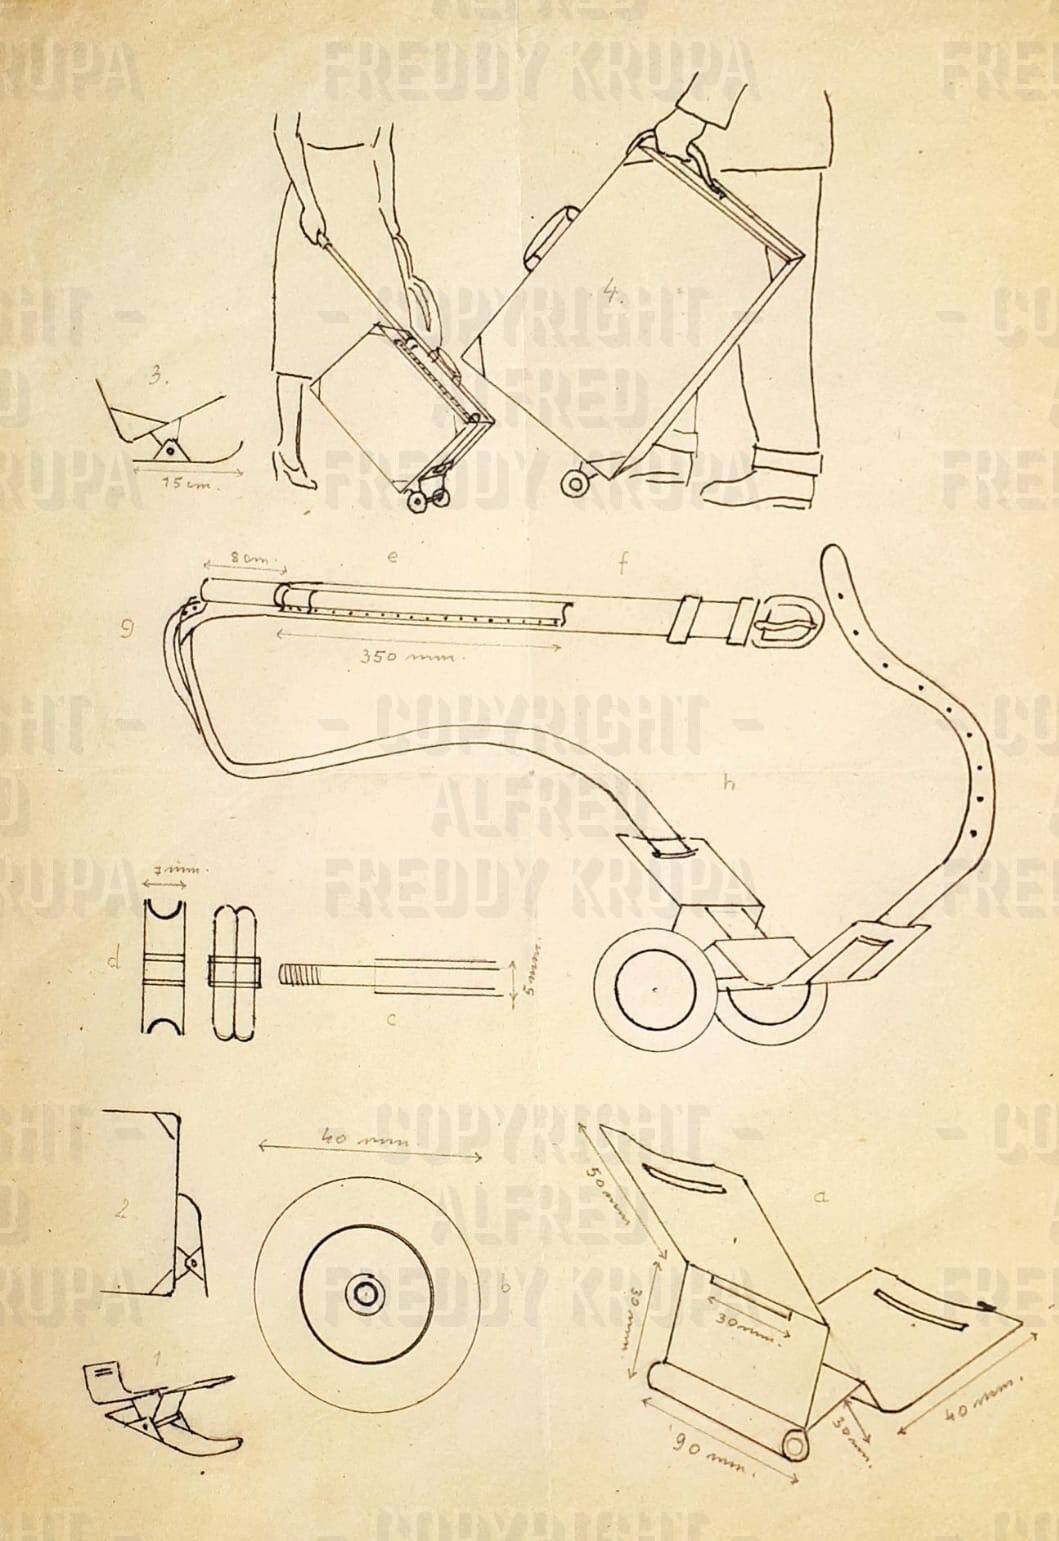 Alfred Krupa izumio je kofer s kotačićima, ali patent nije dobio